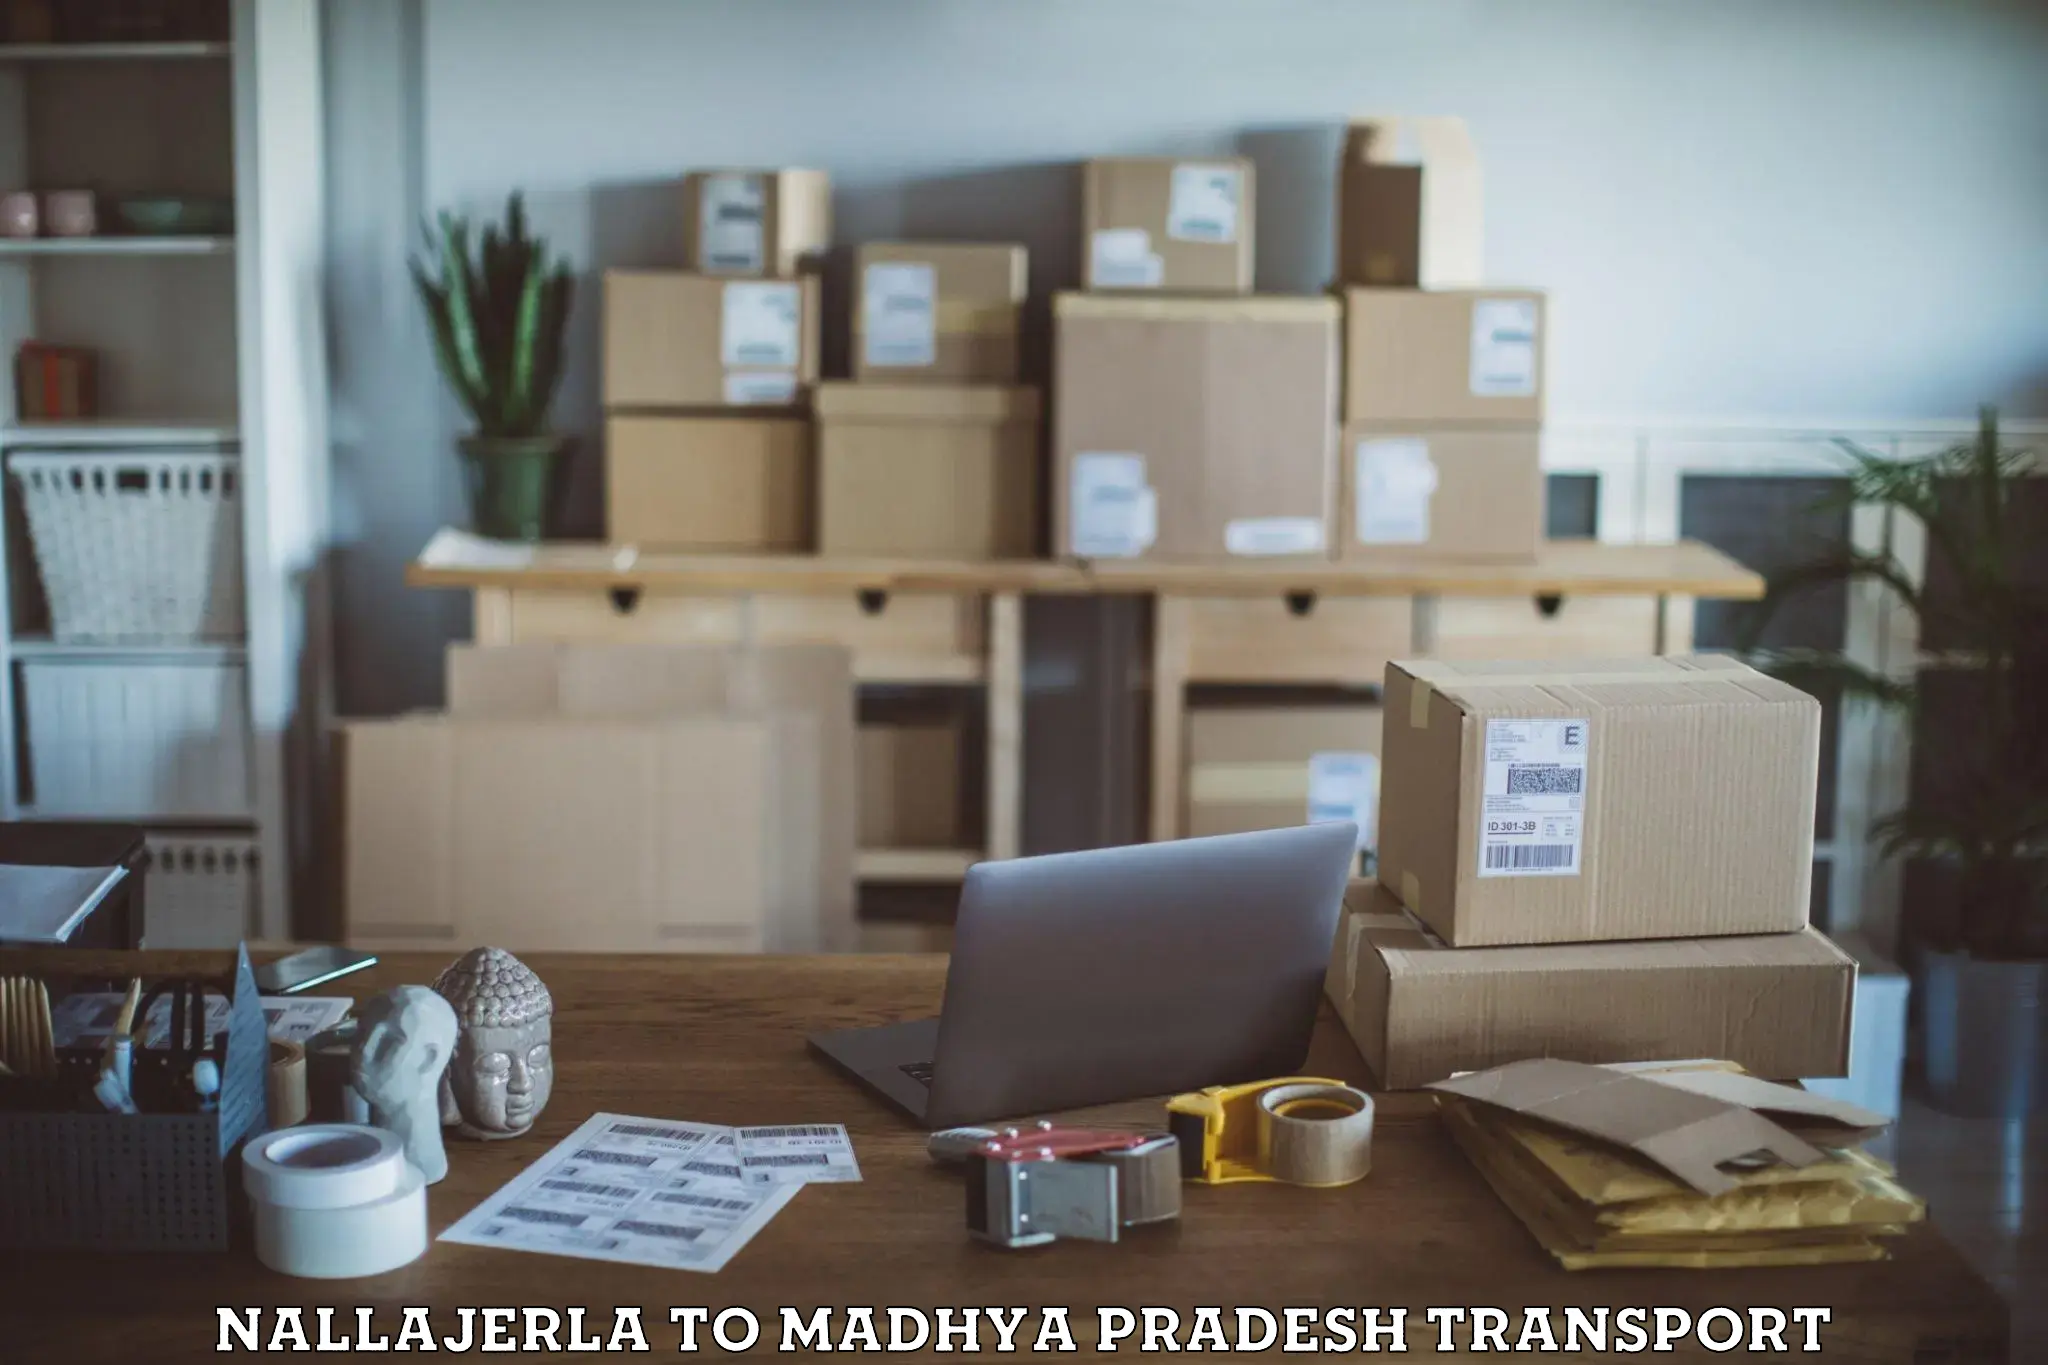 Container transport service Nallajerla to Madhya Pradesh